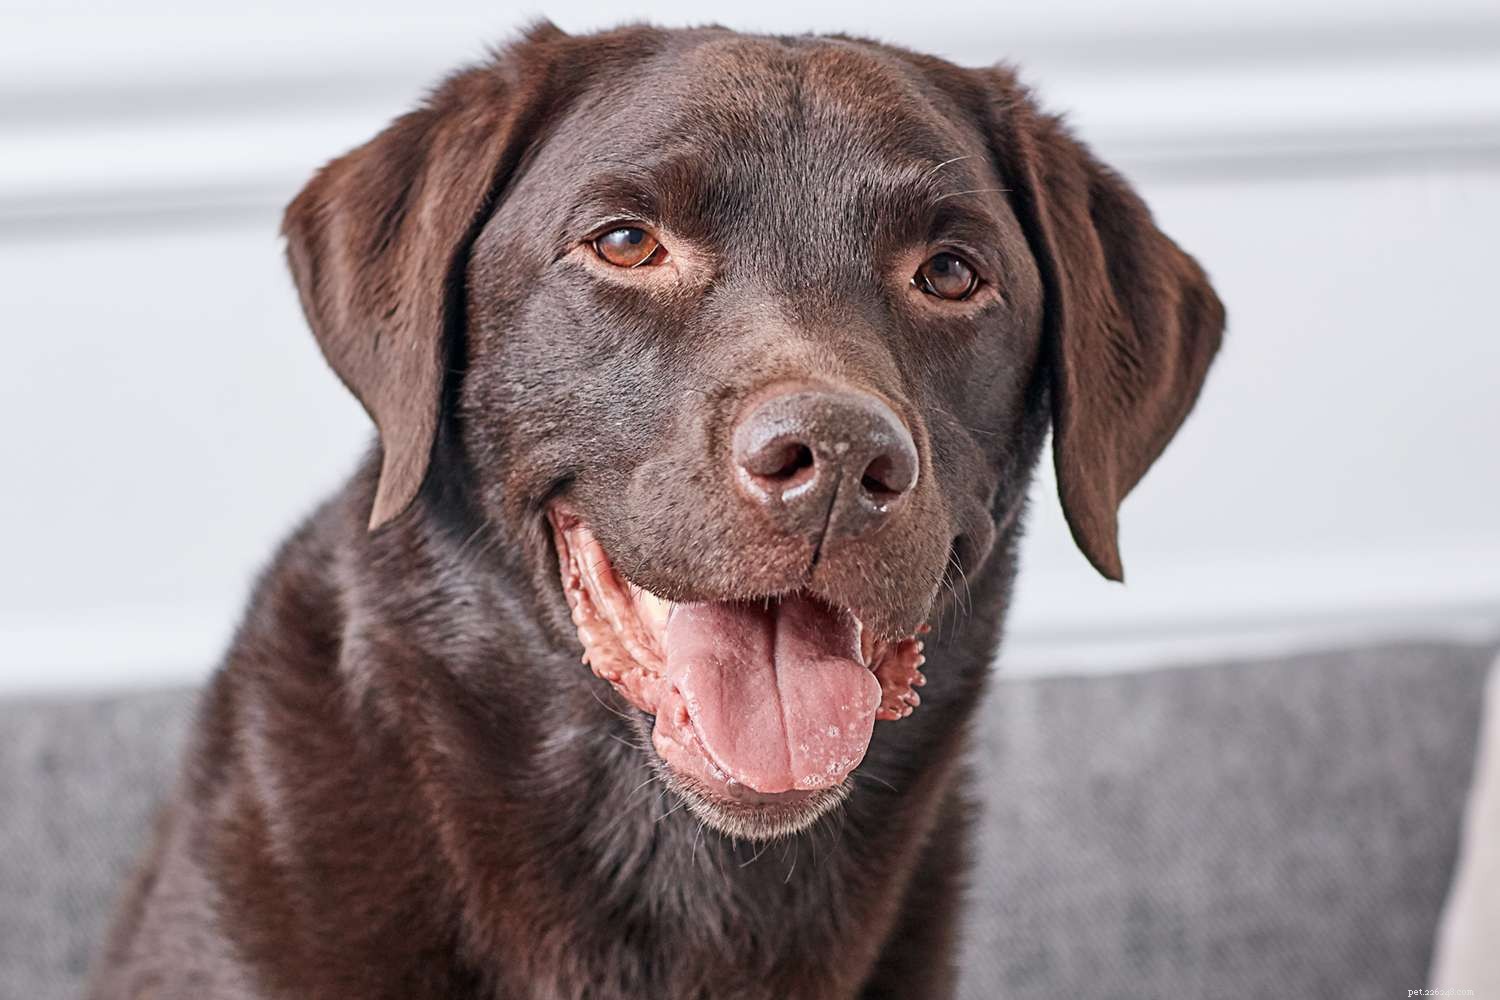 Labrador Retriever (Lab):kenmerken en verzorging van hondenrassen